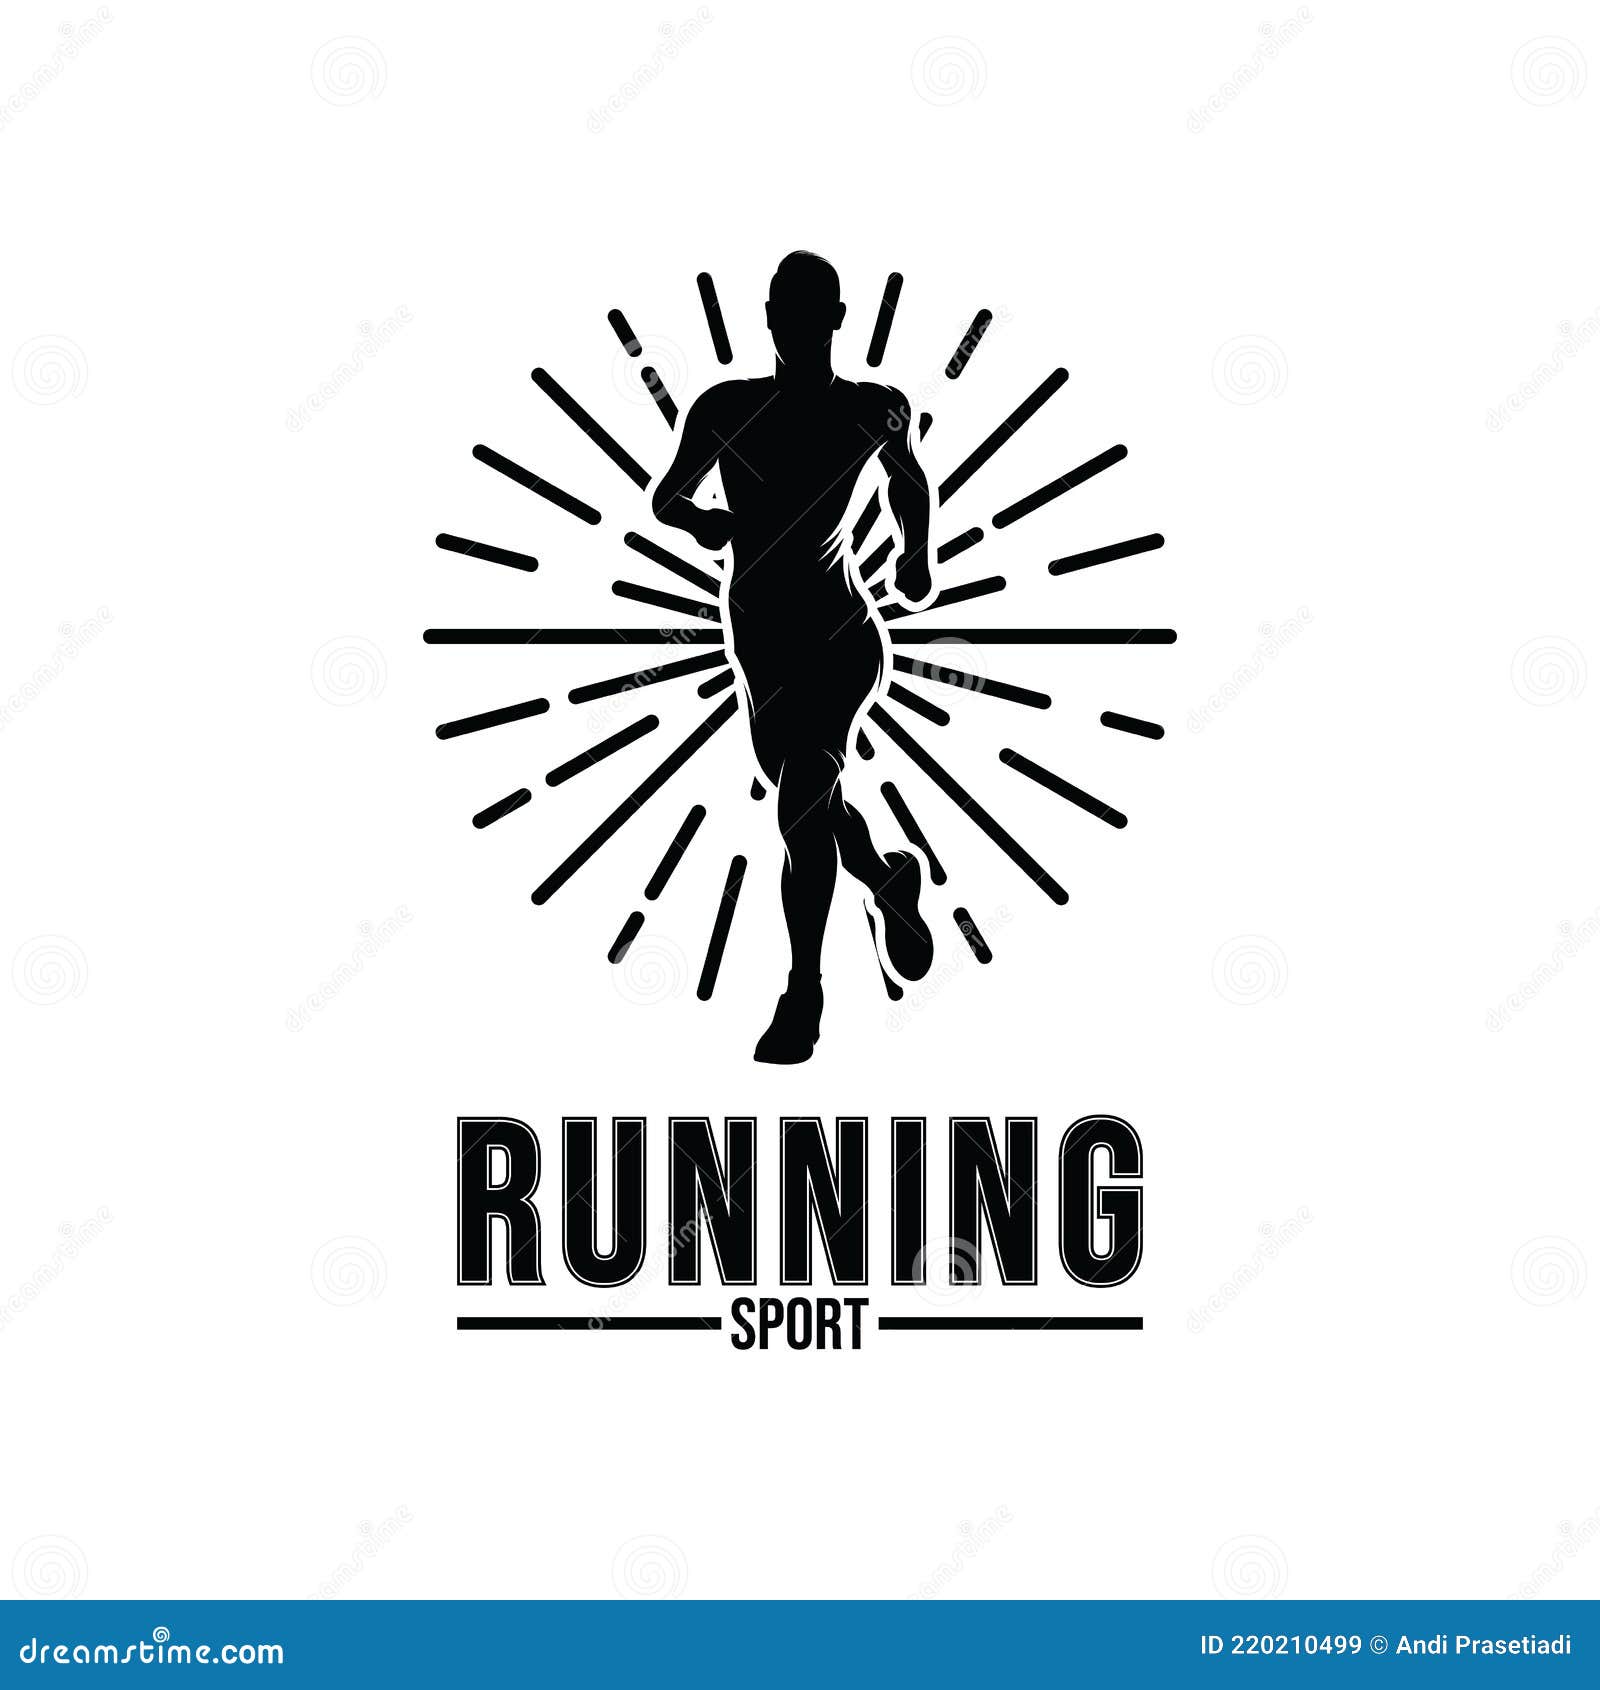 Running Man Logo Design Inspiration Stock Vector - Illustration of ...